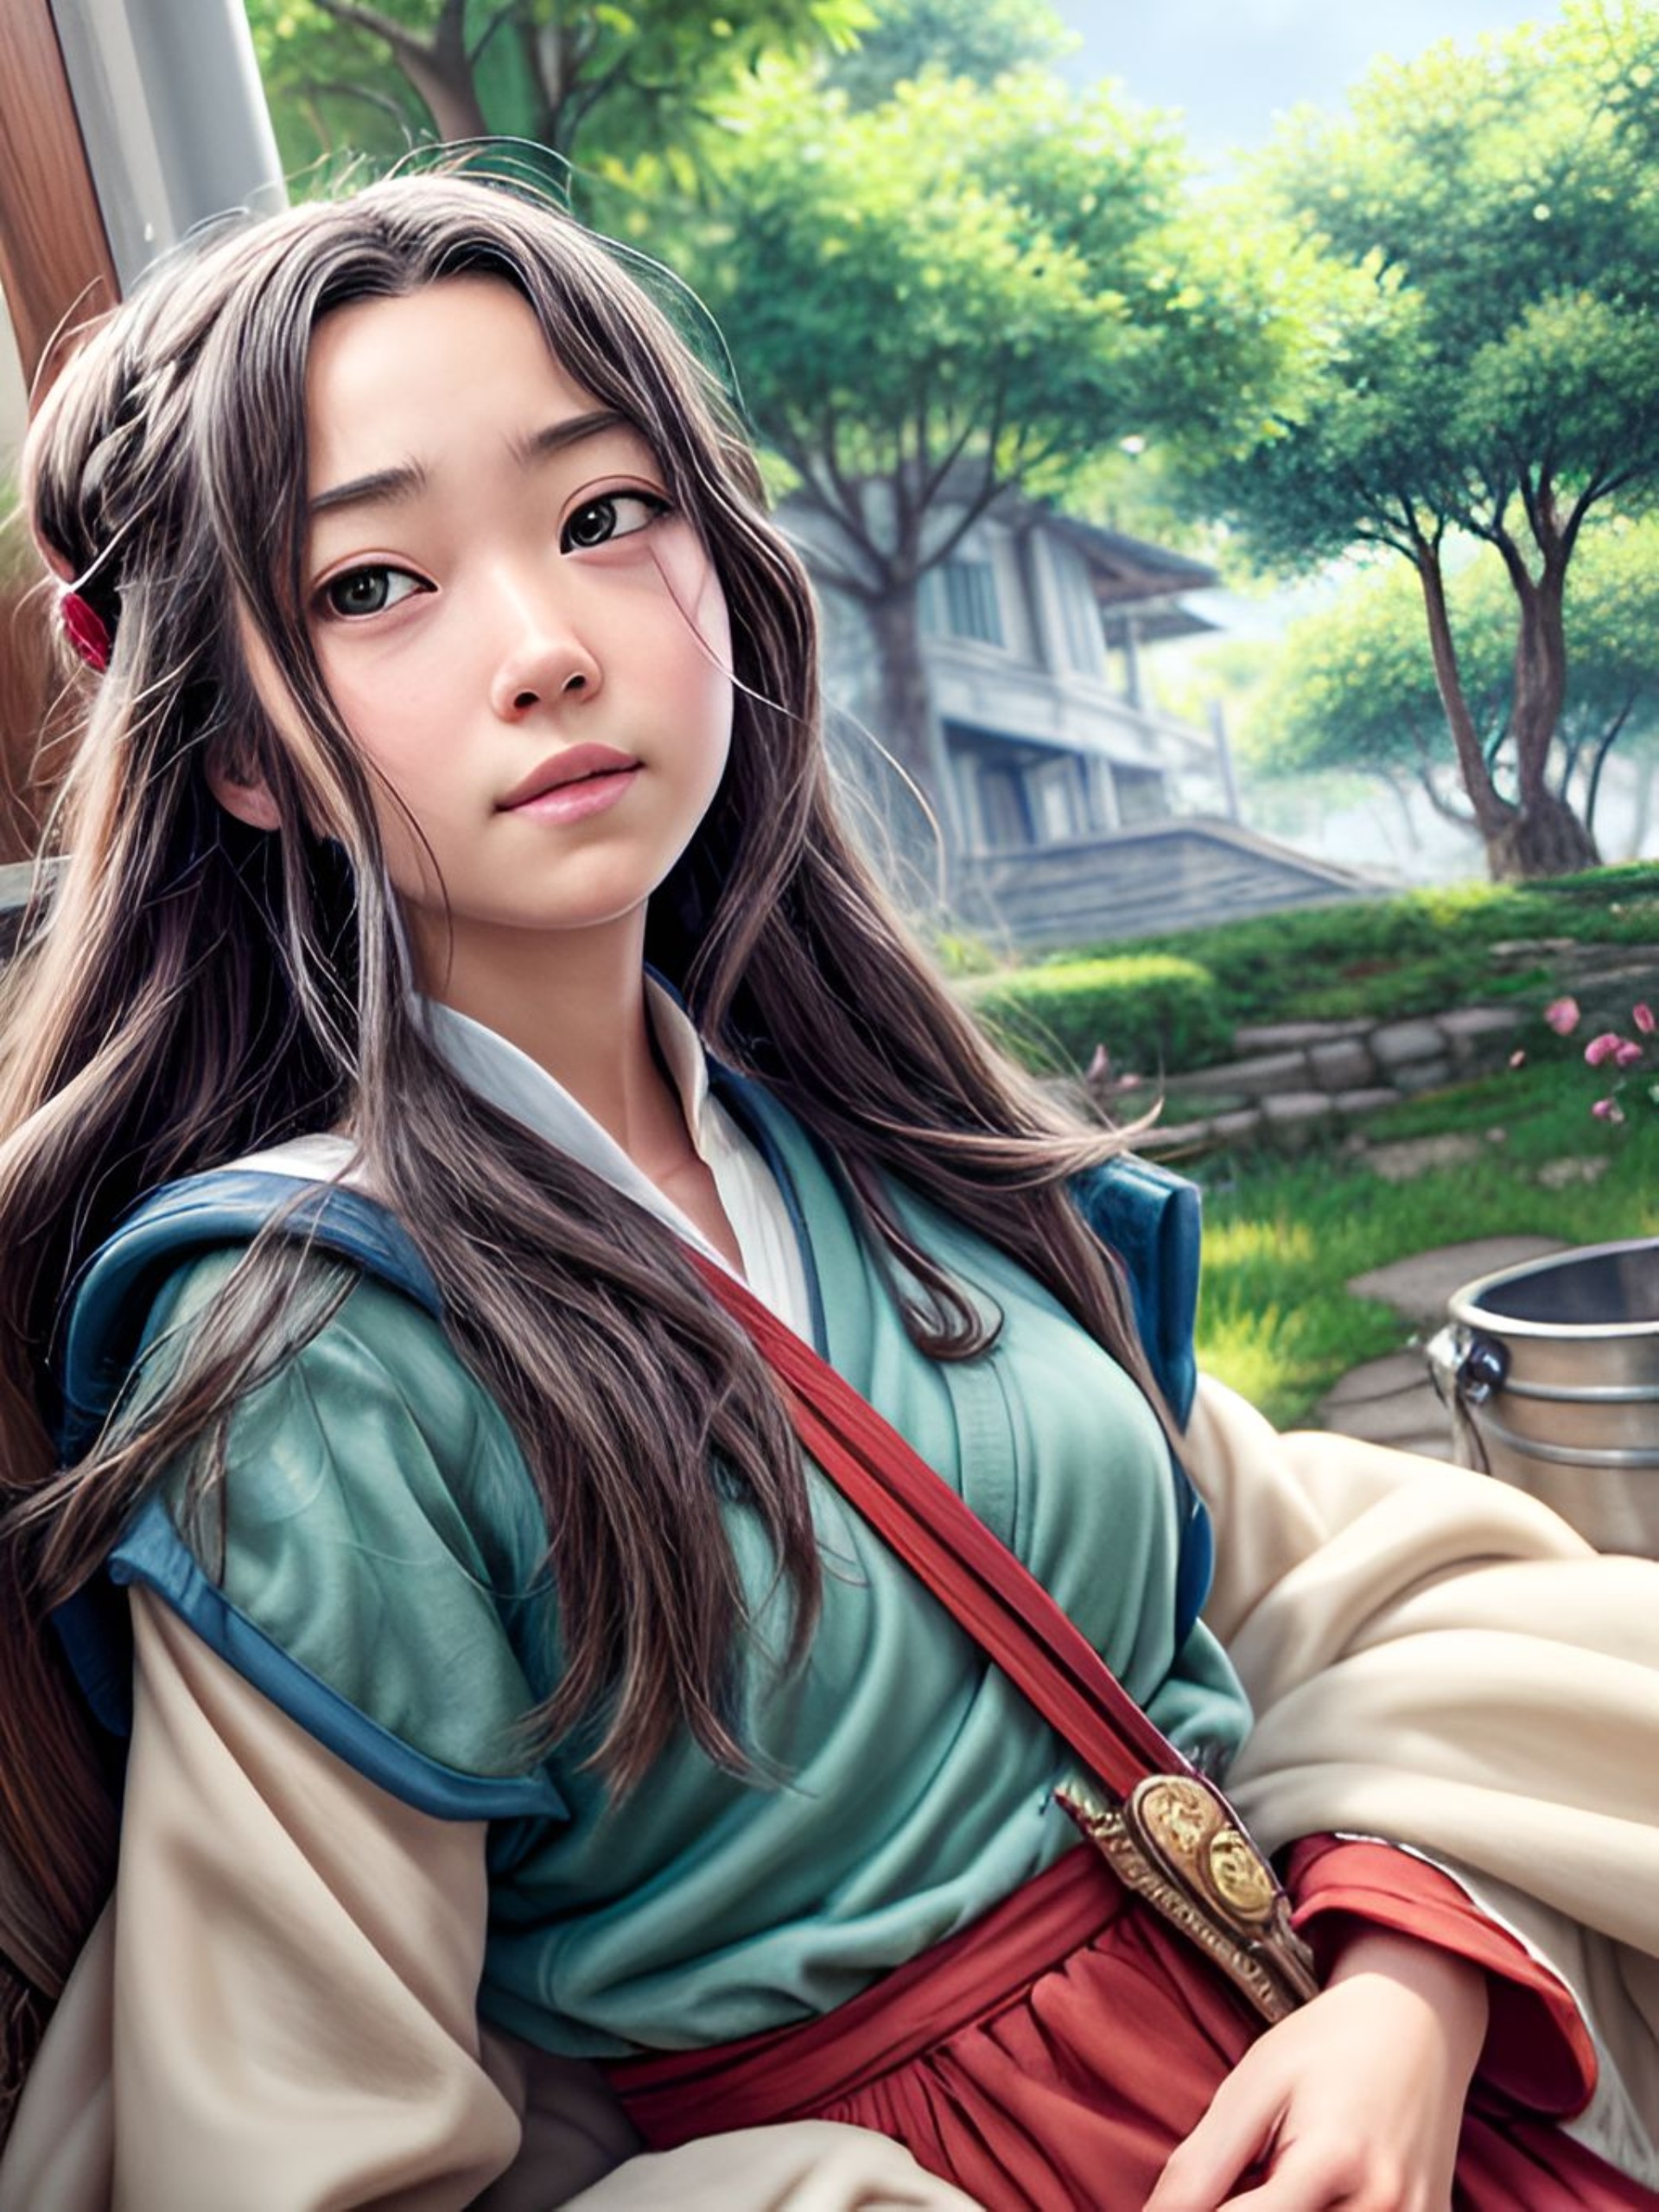 Бесплатное фото Красивая девушка, Азиатка, с длинными волосами, на фоне сада, портрет